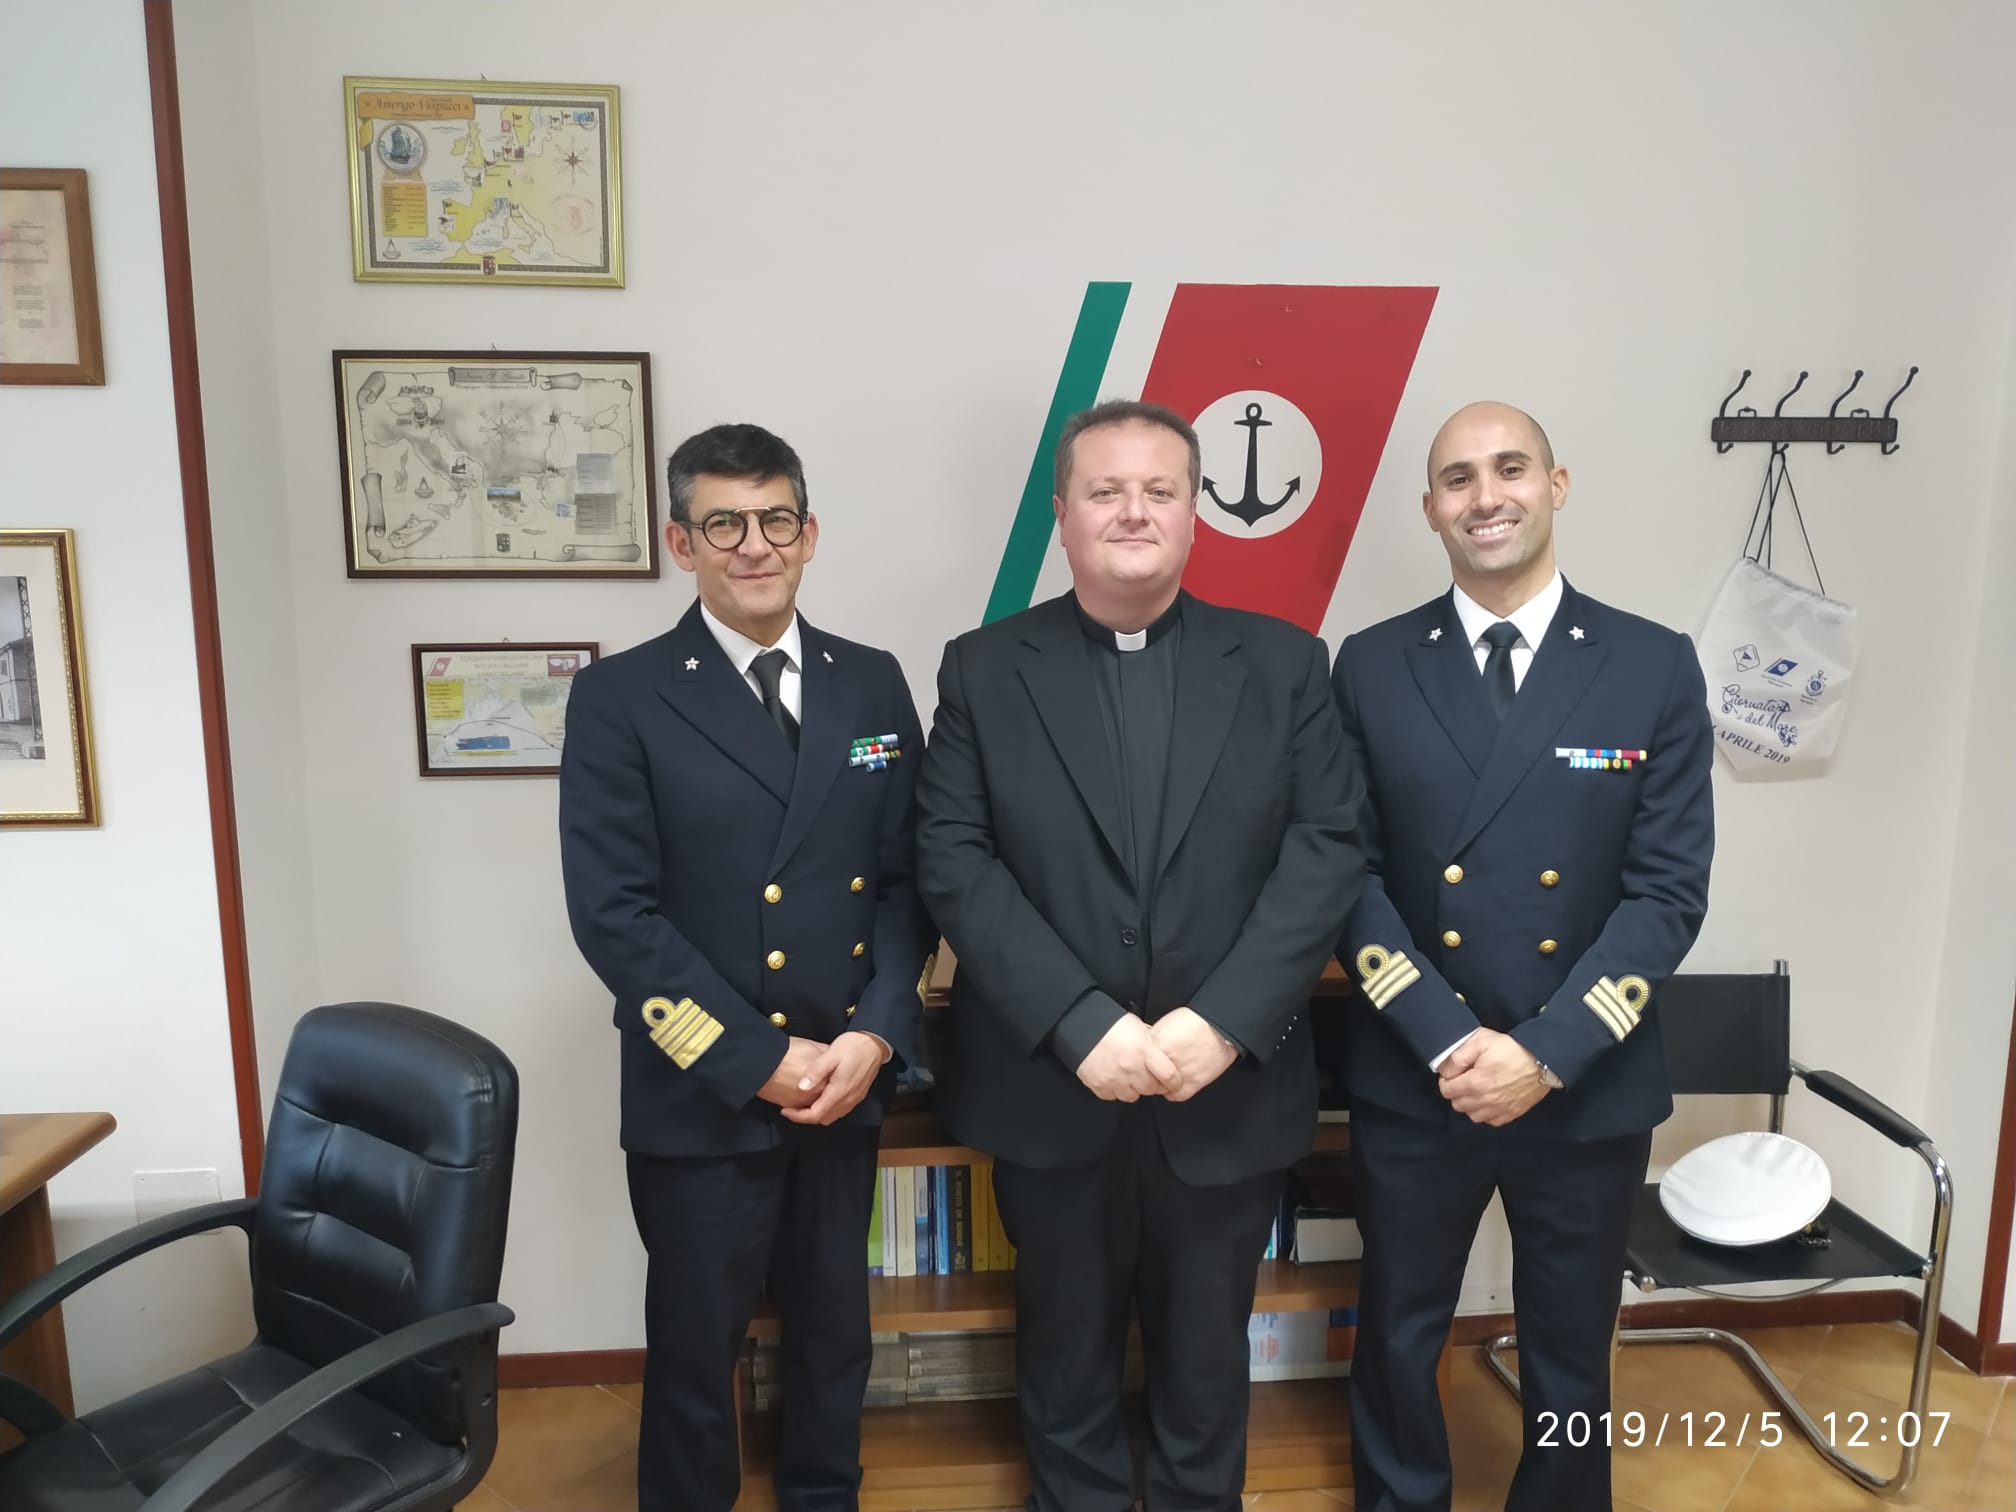 Guardia costiera, capo compartimento Salerno visita uffici Agropoli